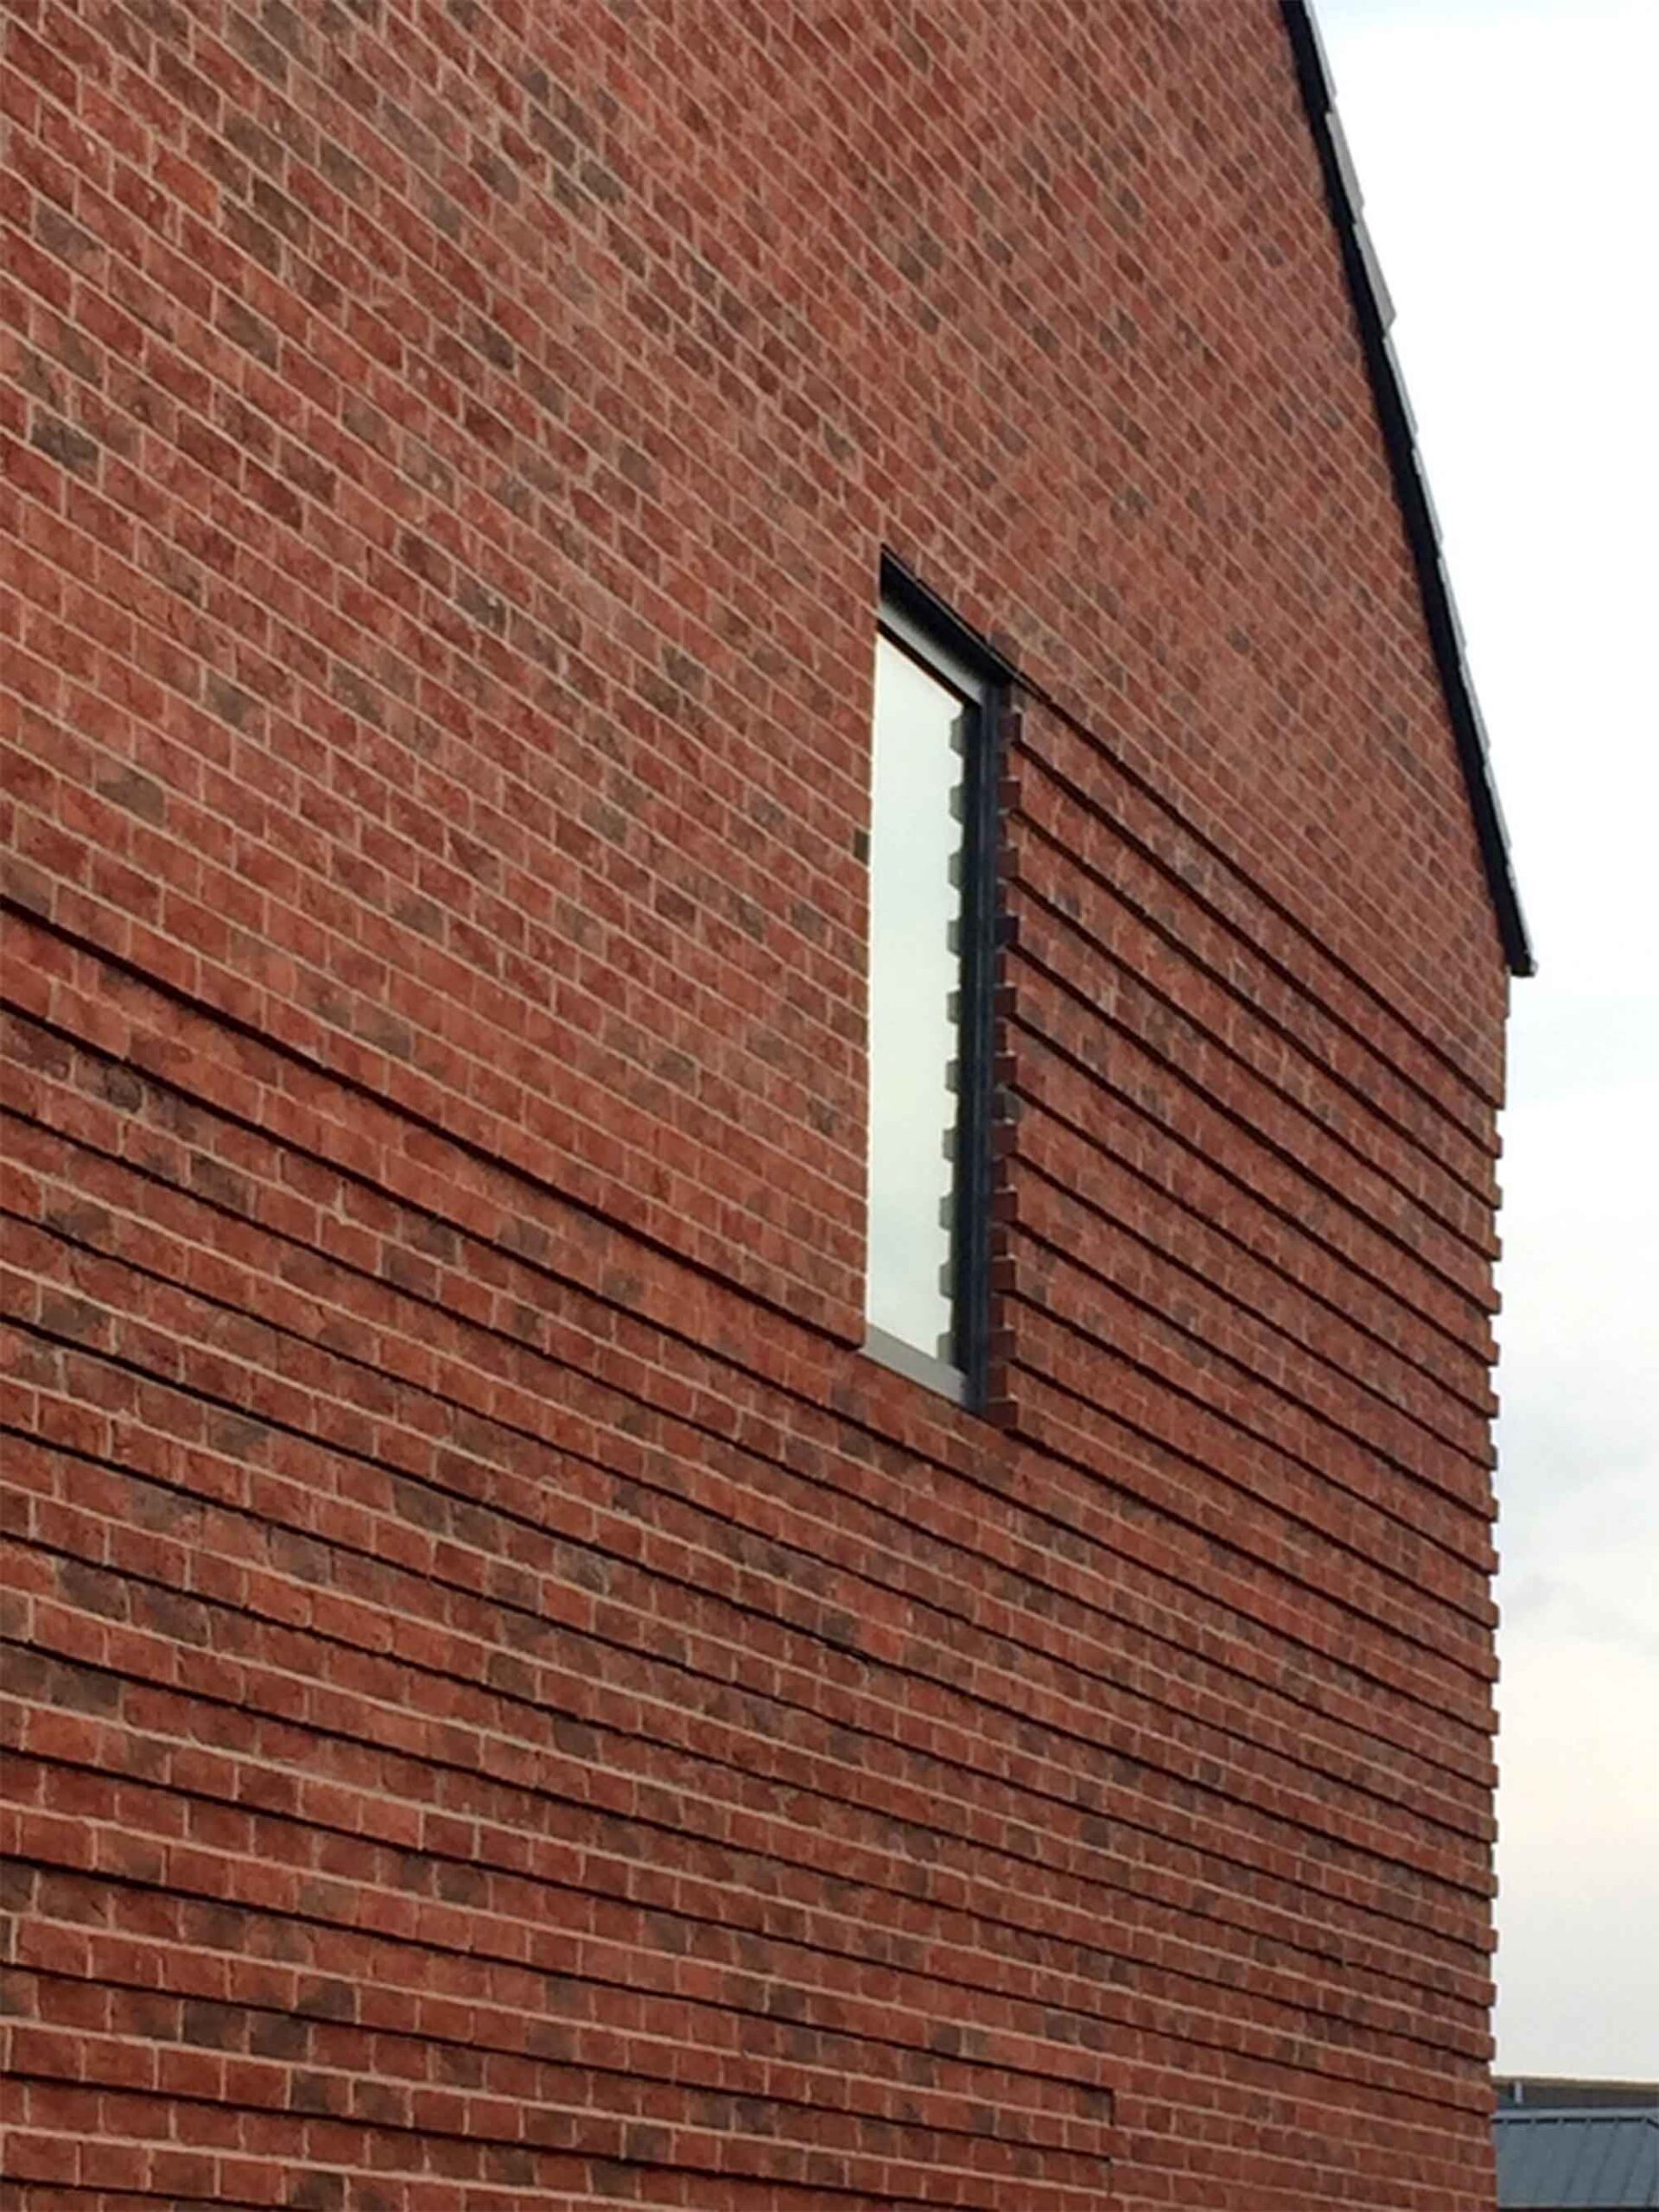 taylor-wimpey-openstudio-architects-brickwork-detail